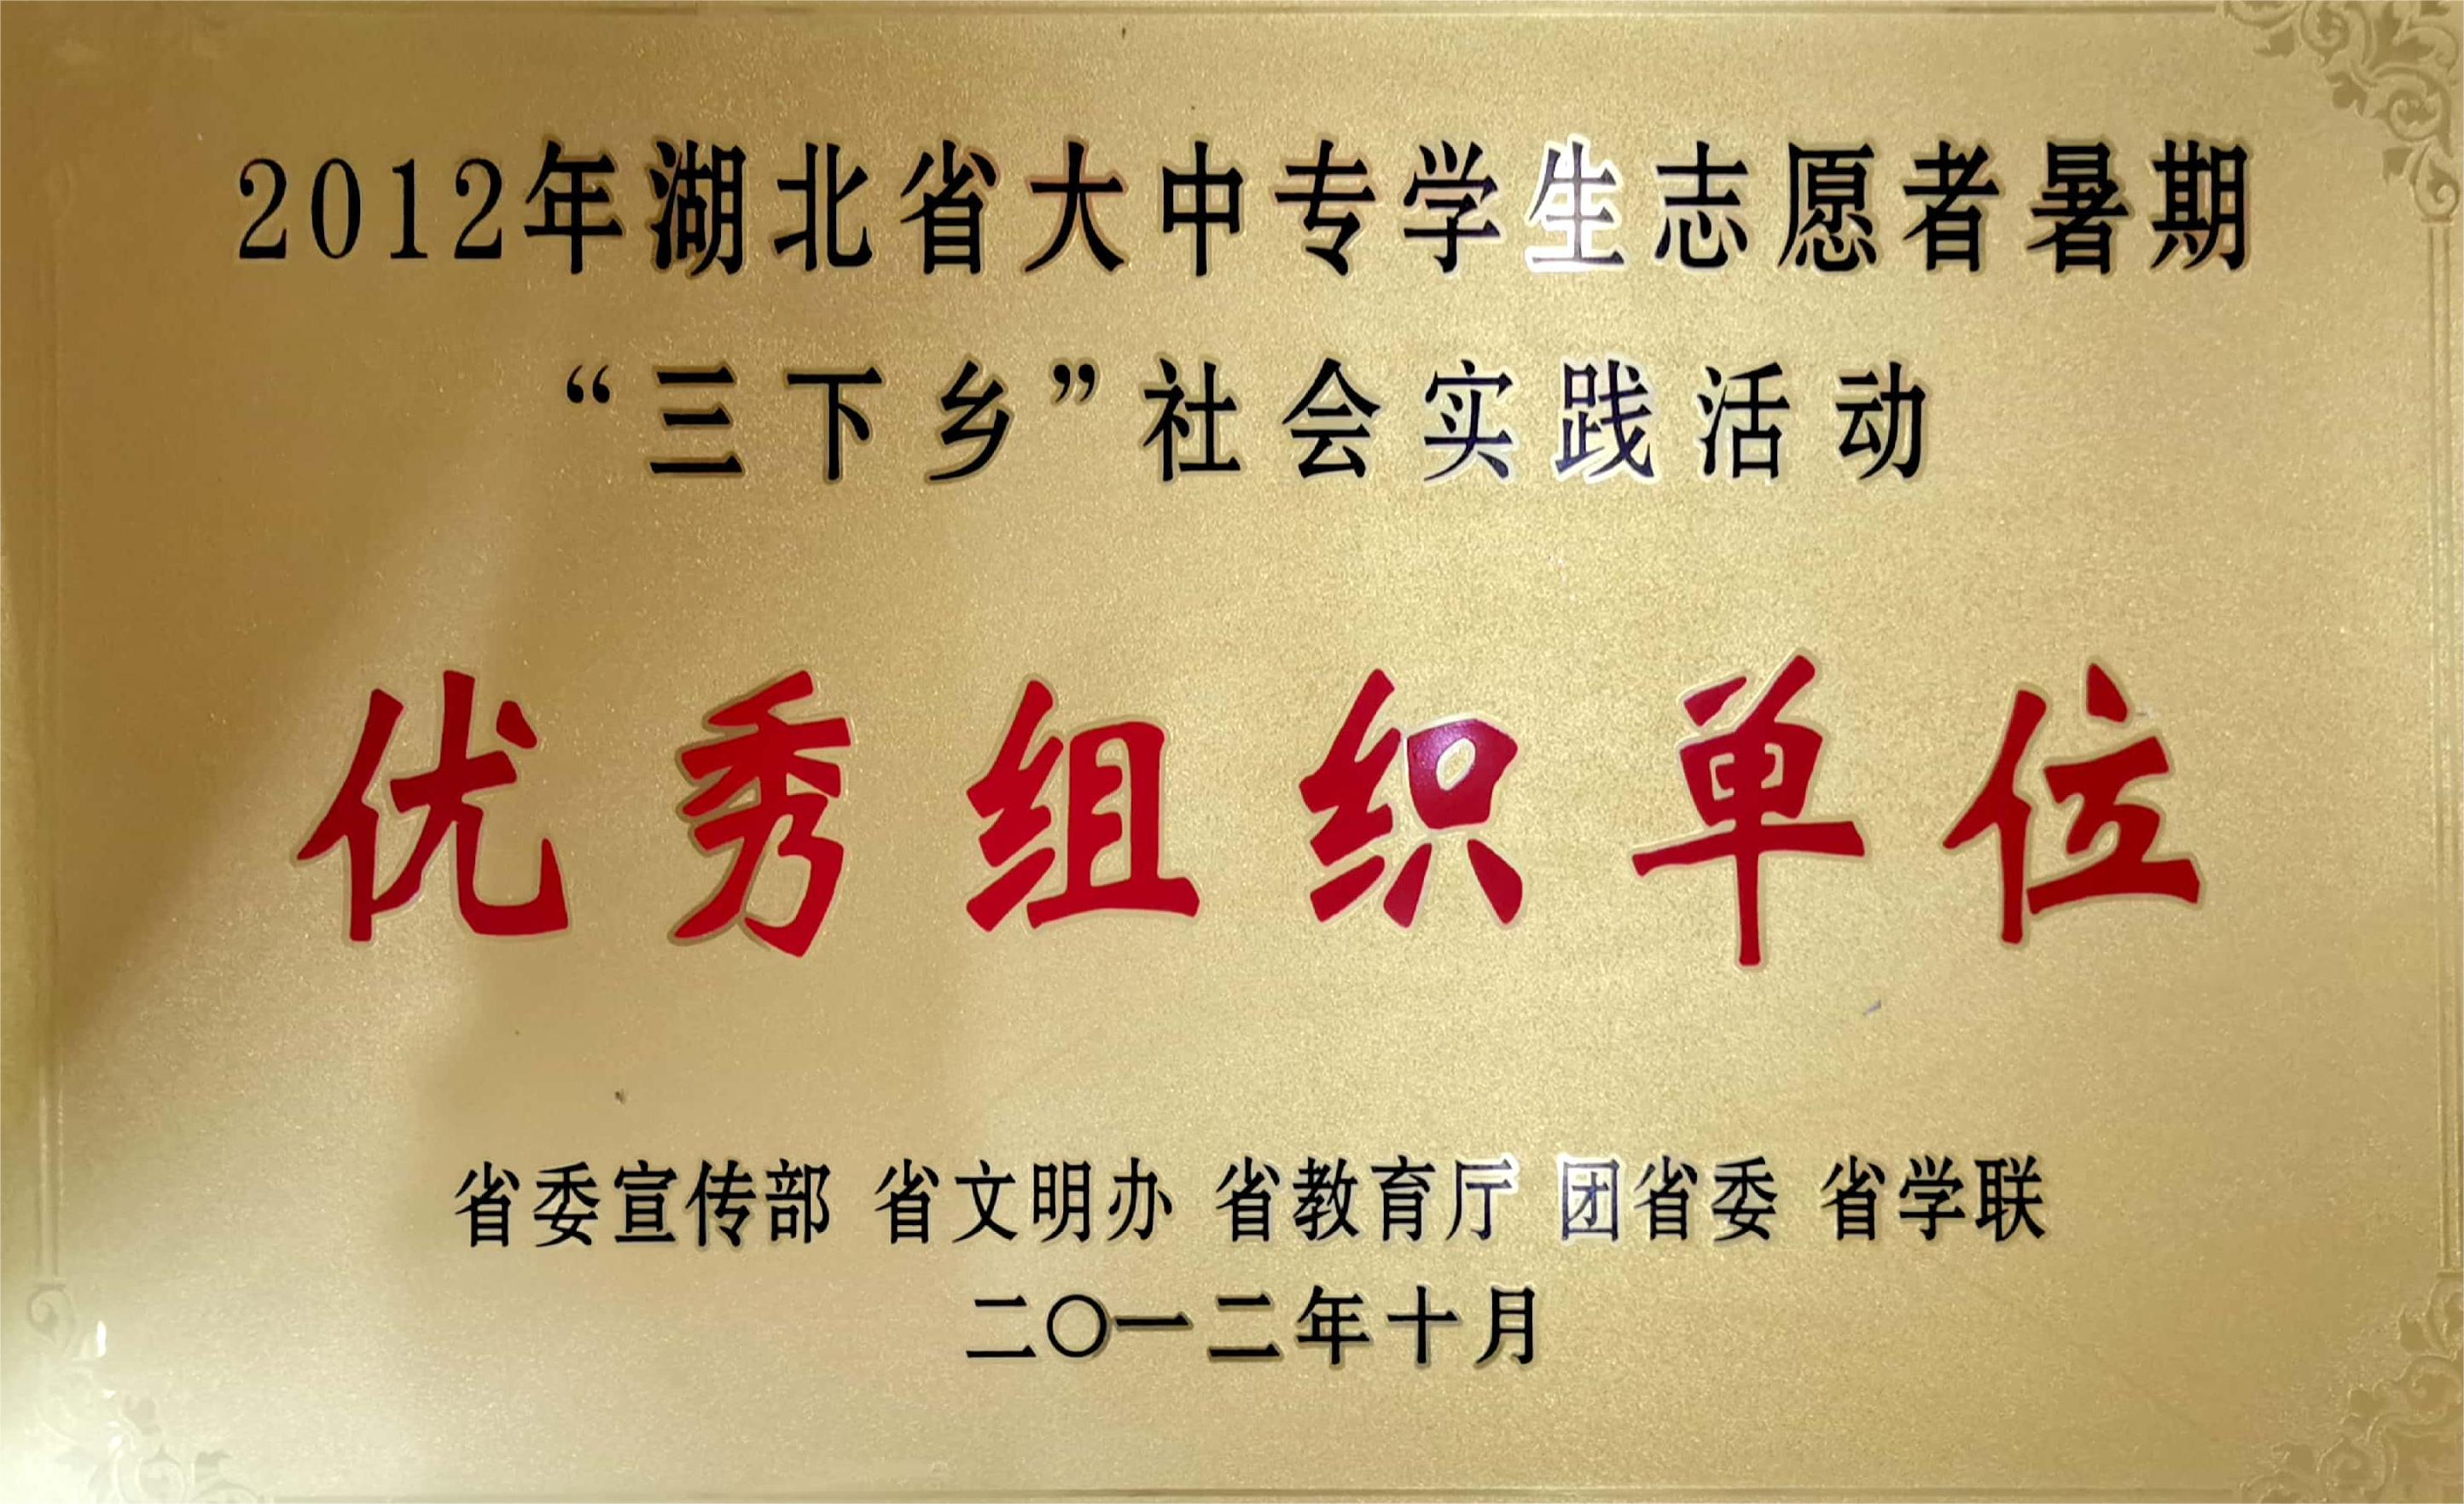 2012年湖北省大中专学生志愿者暑期“三下乡”社会实践活动优秀组织单位